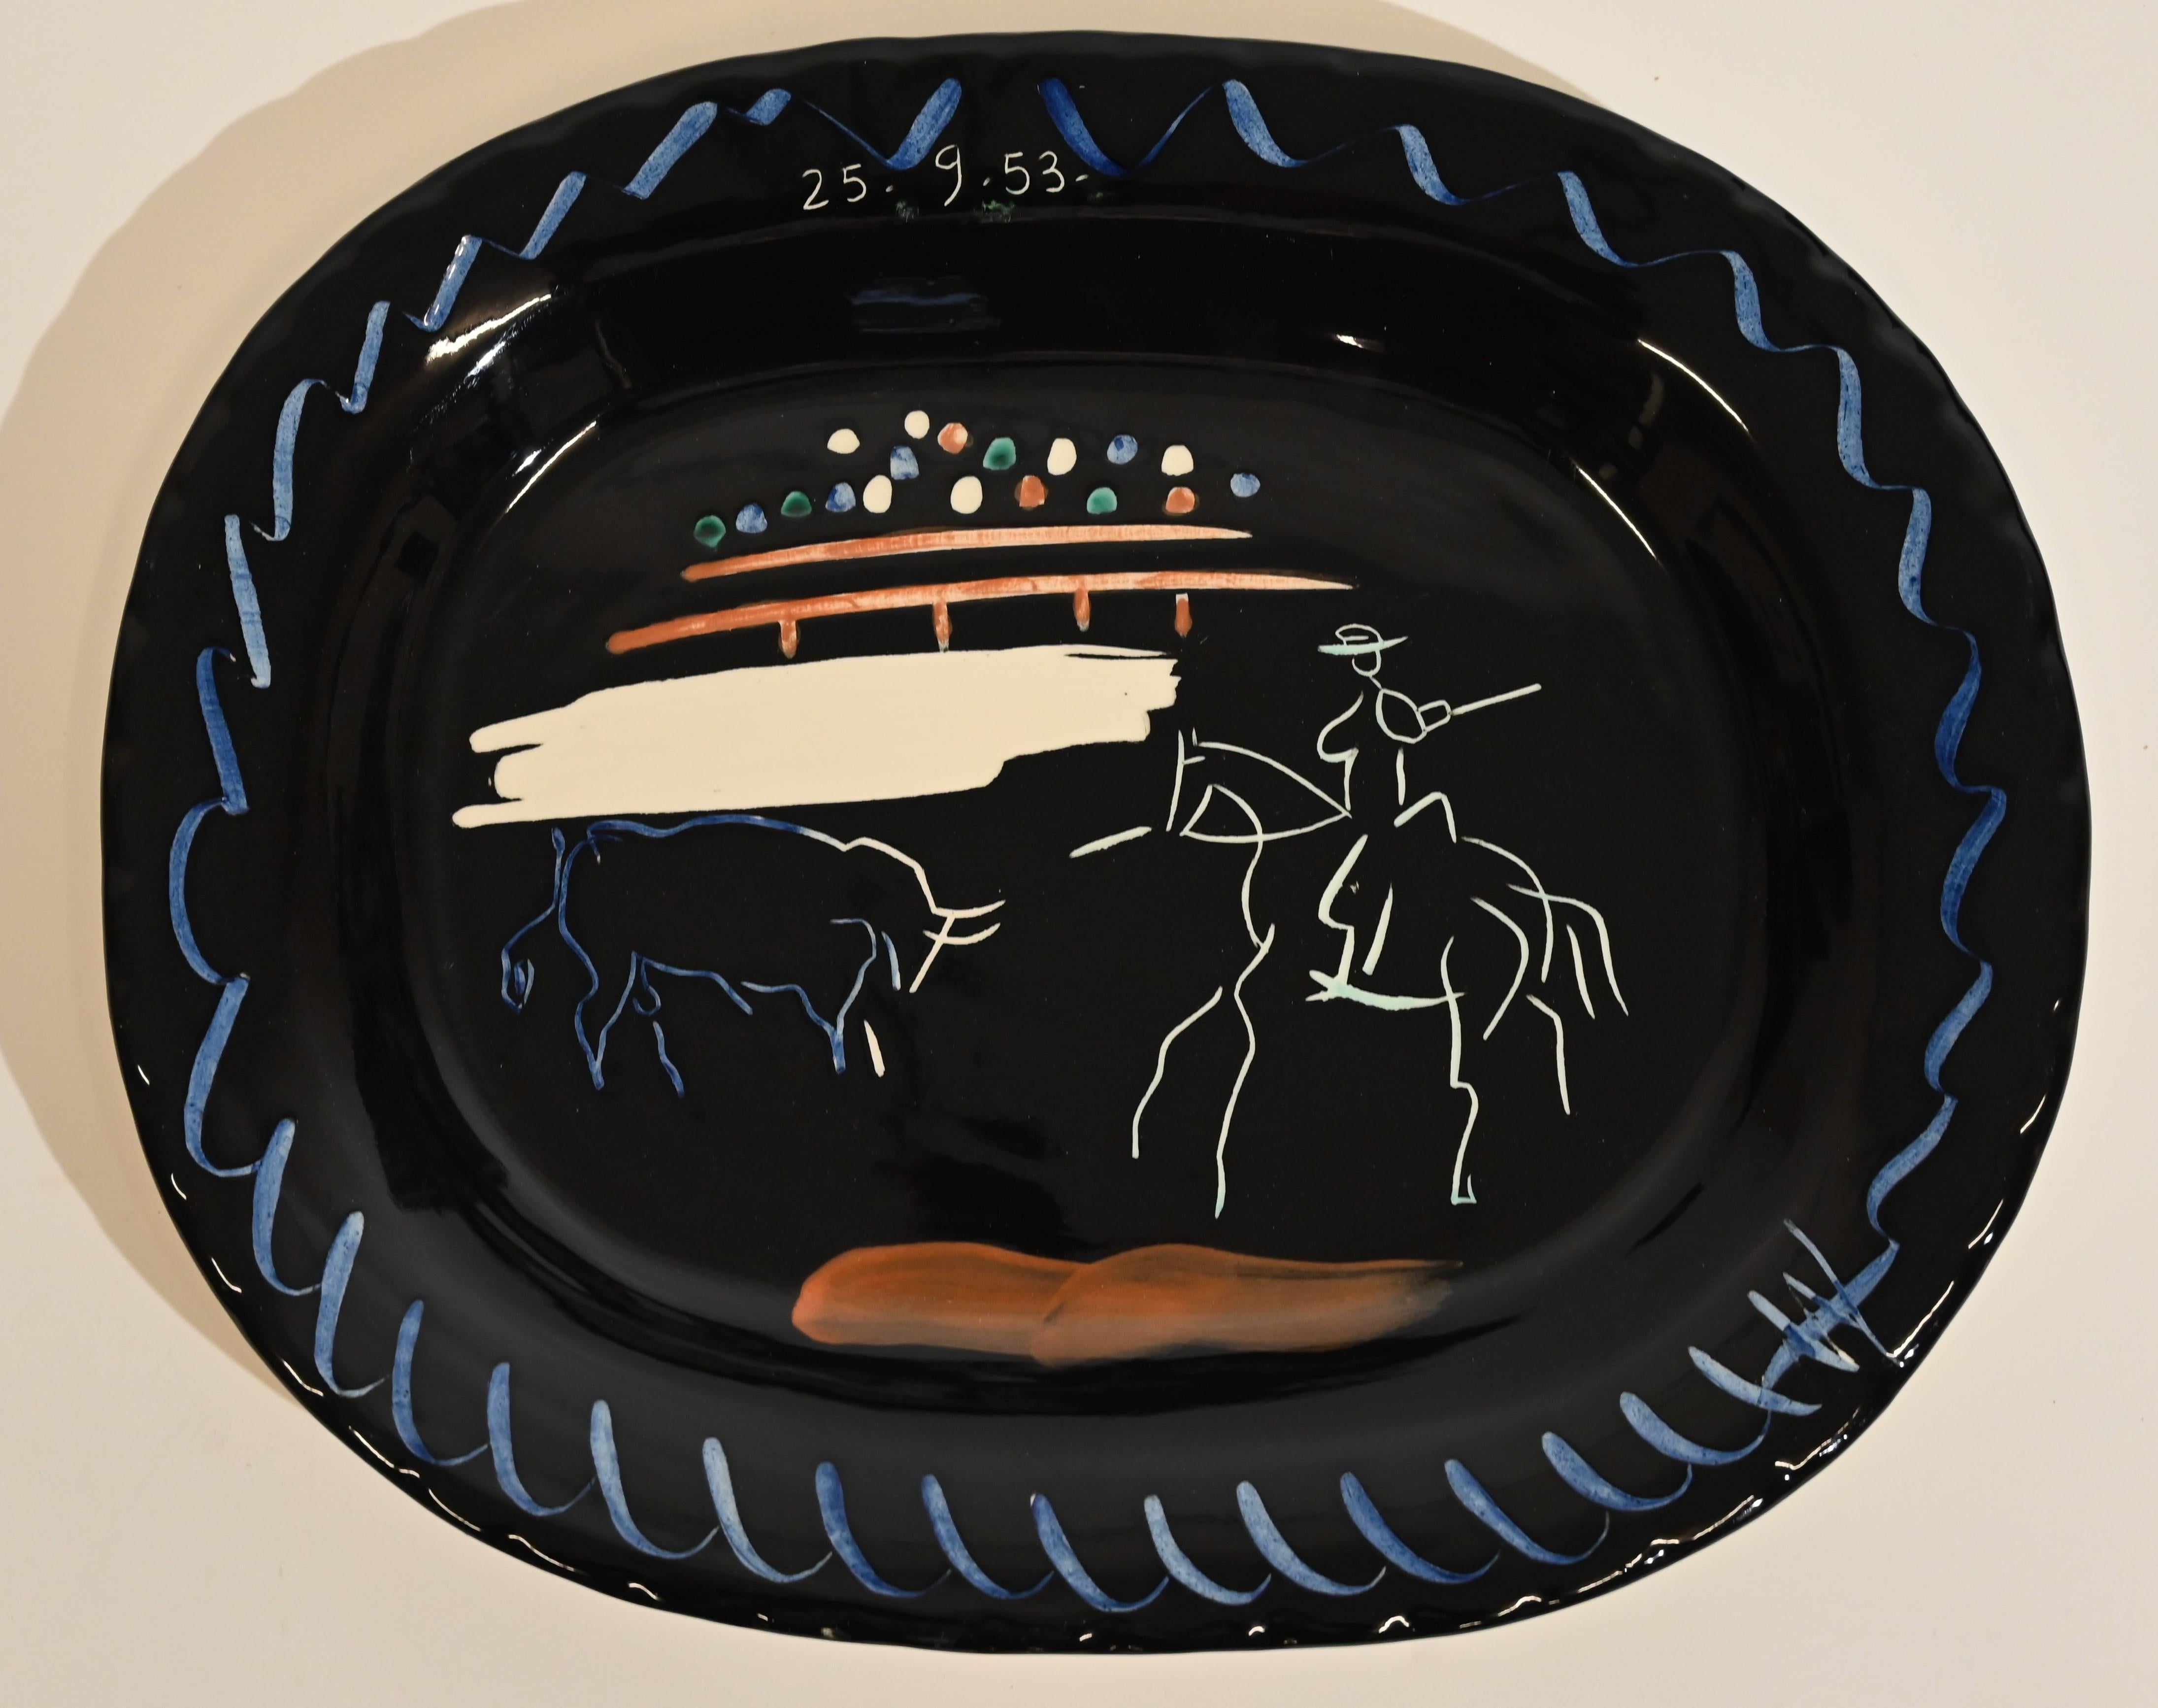 Corrida sur fond noir Keramikteller von Pablo Picasso, datiert 